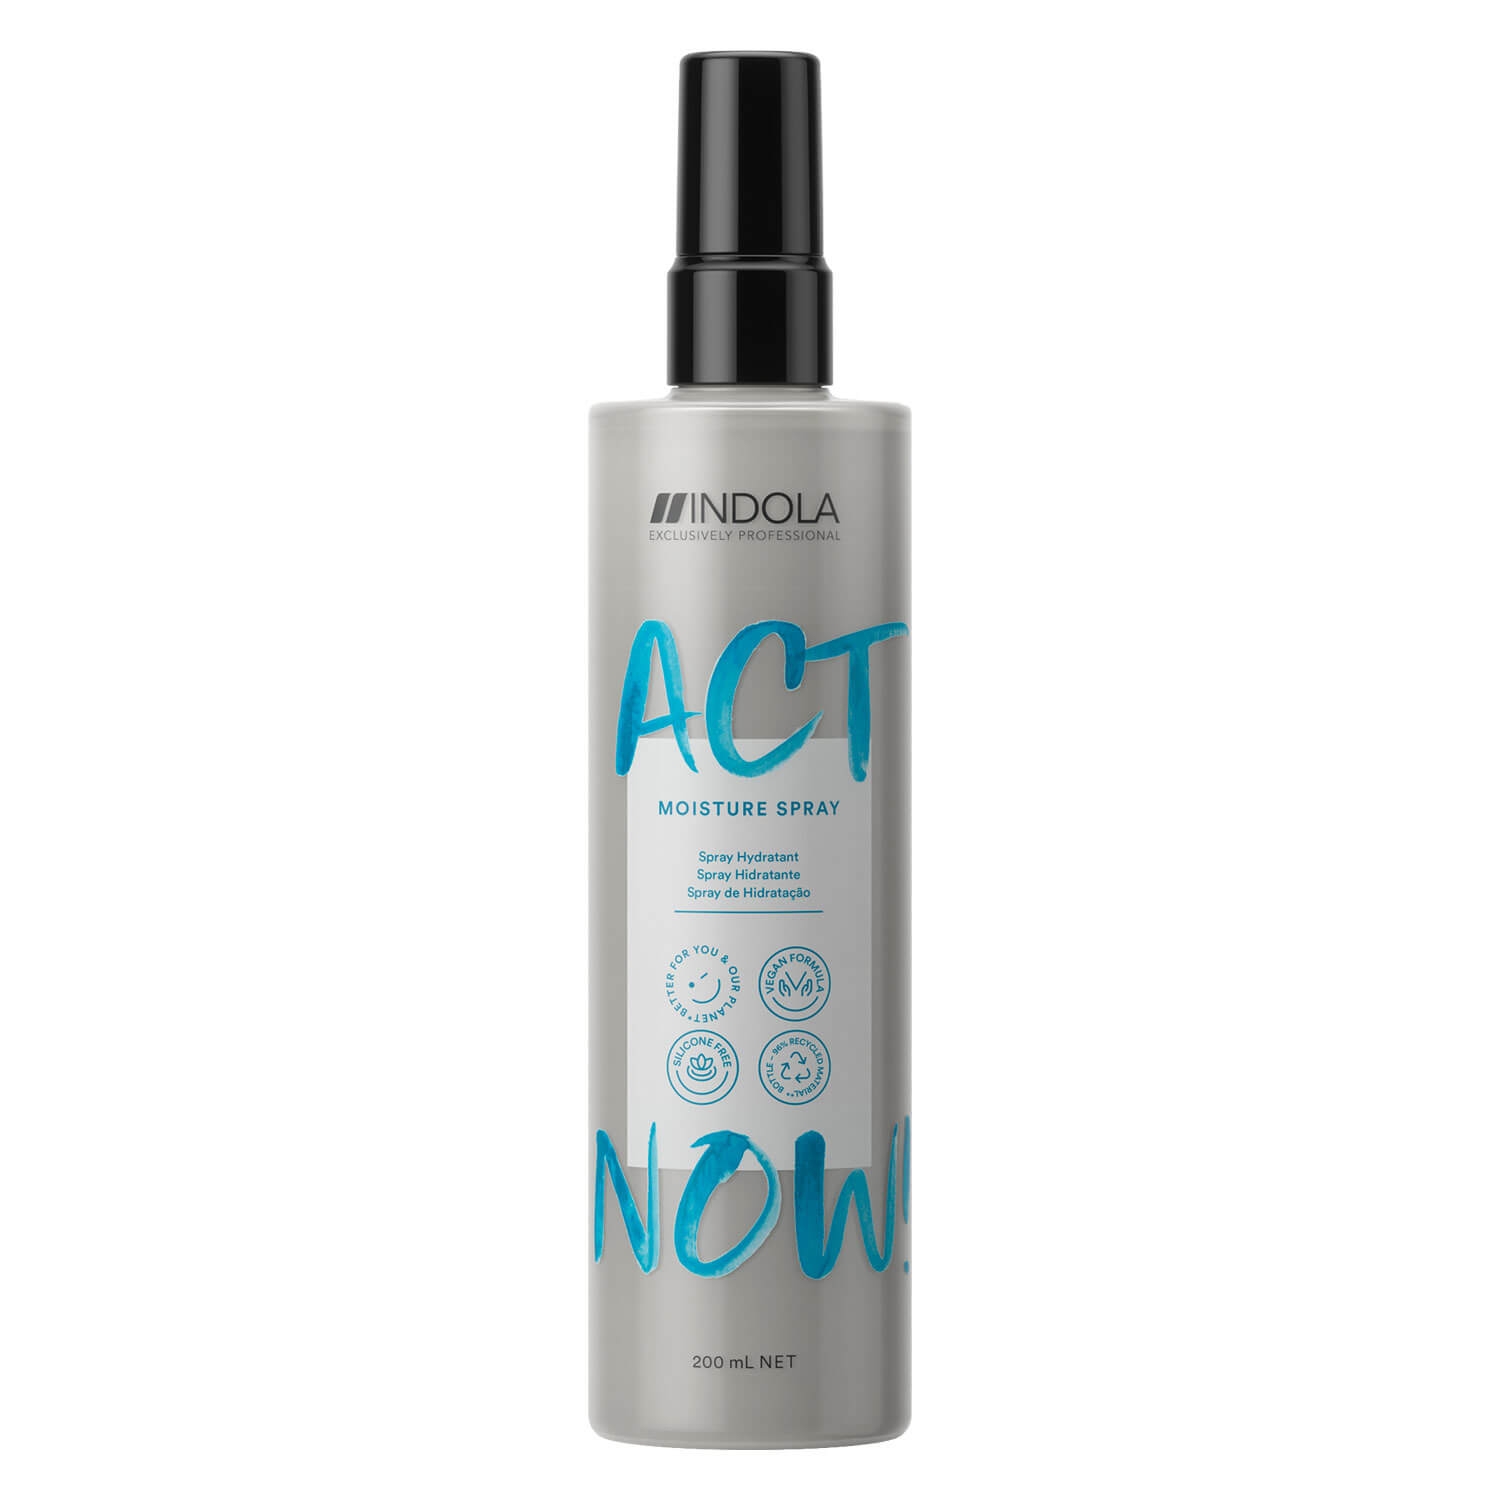 Produktbild von ACT NOW - Moisture Spray